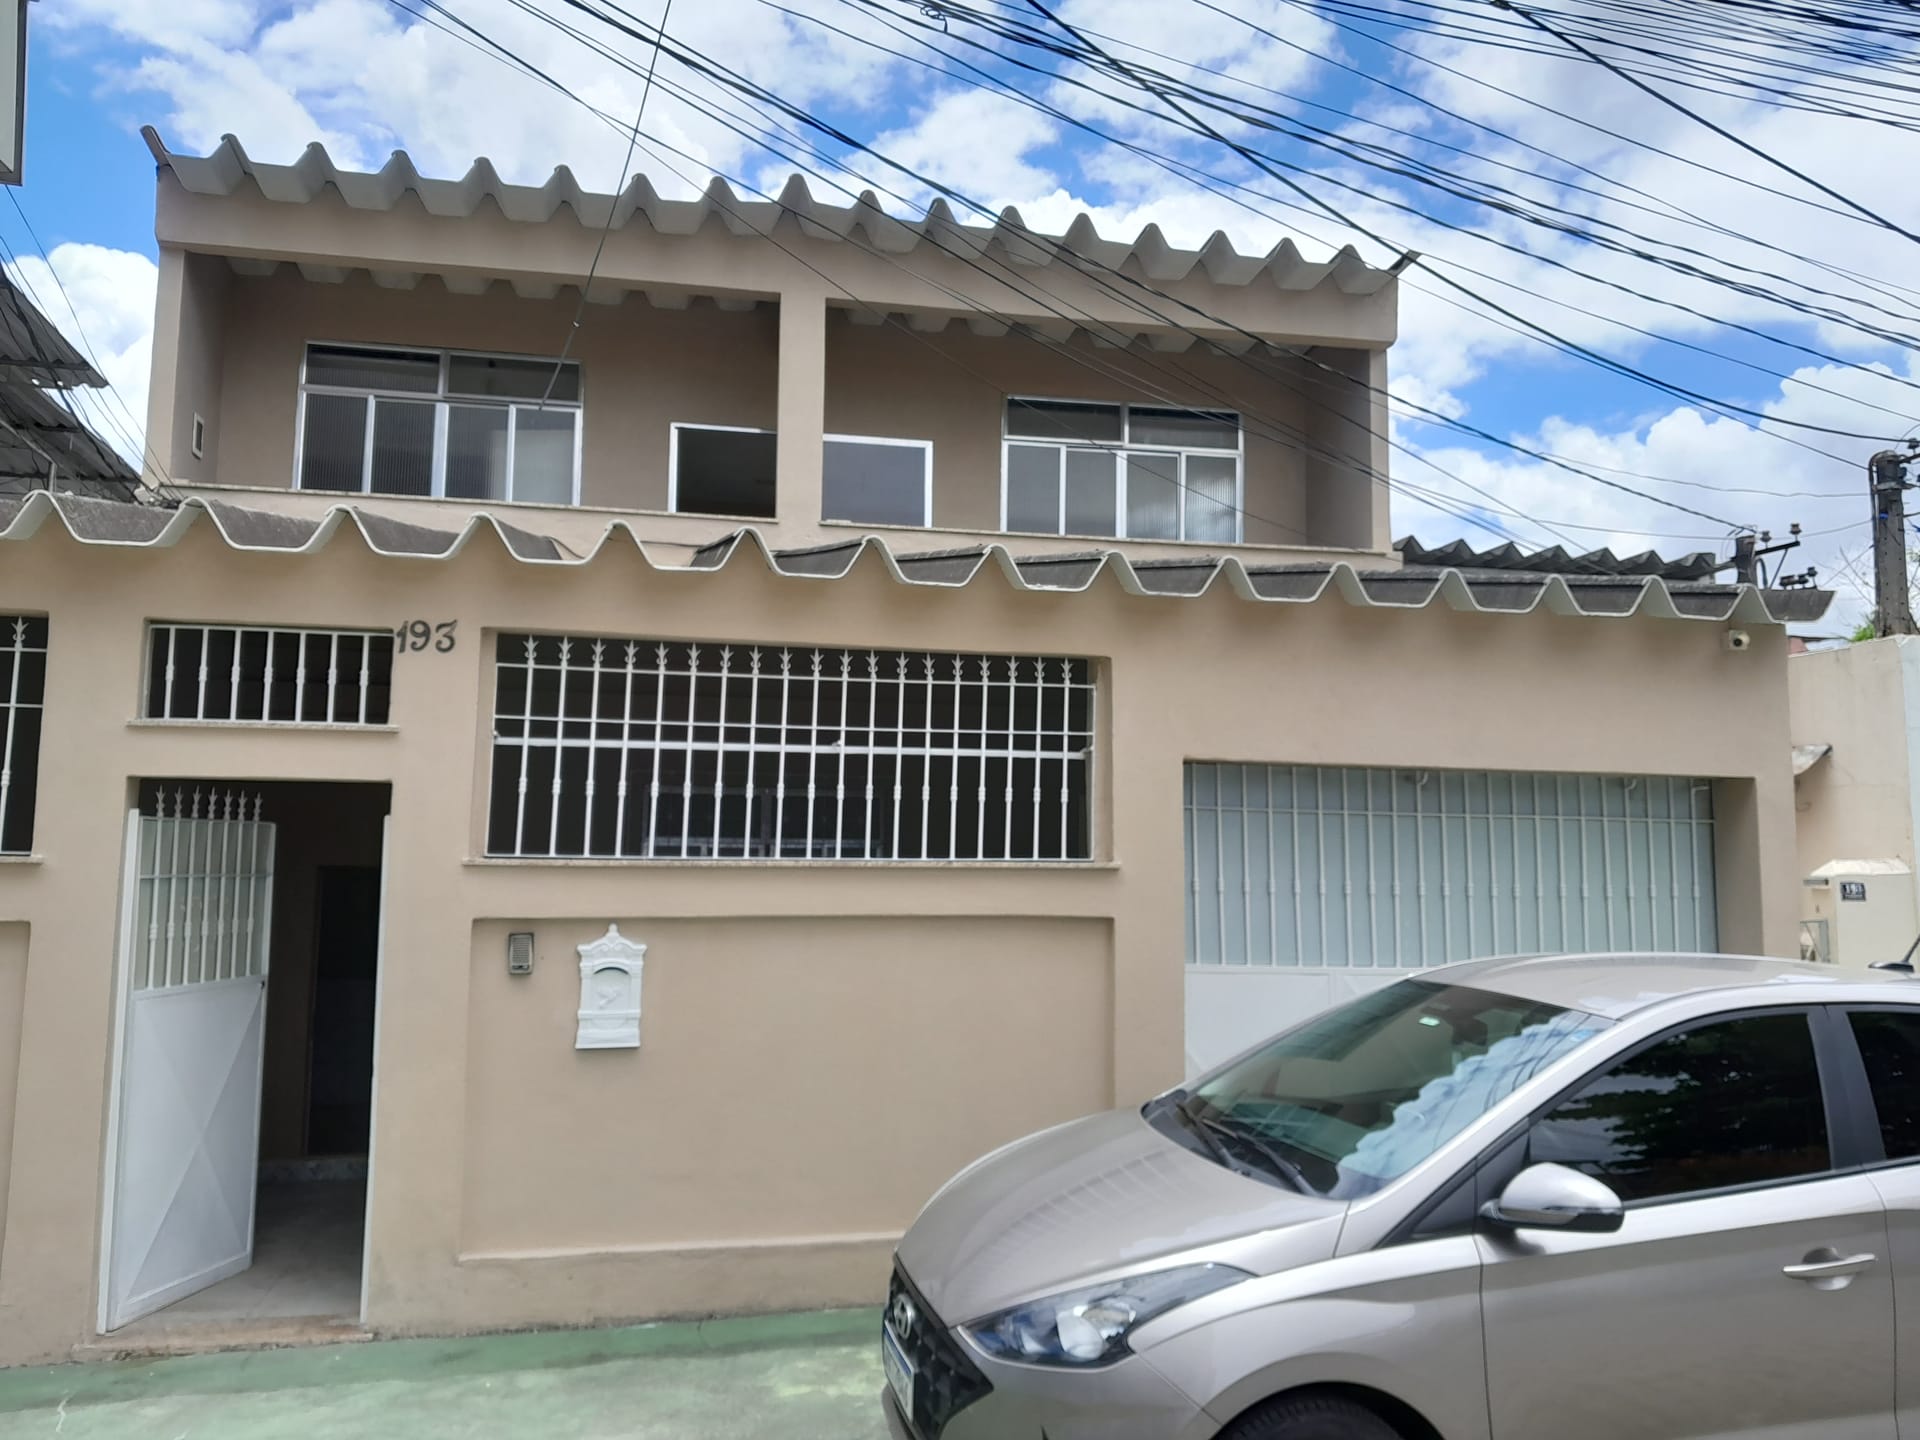 Casa em Abolição, Rio de Janeiro/RJ de 800m² 4 quartos para locação R$ 2.500,00/mes